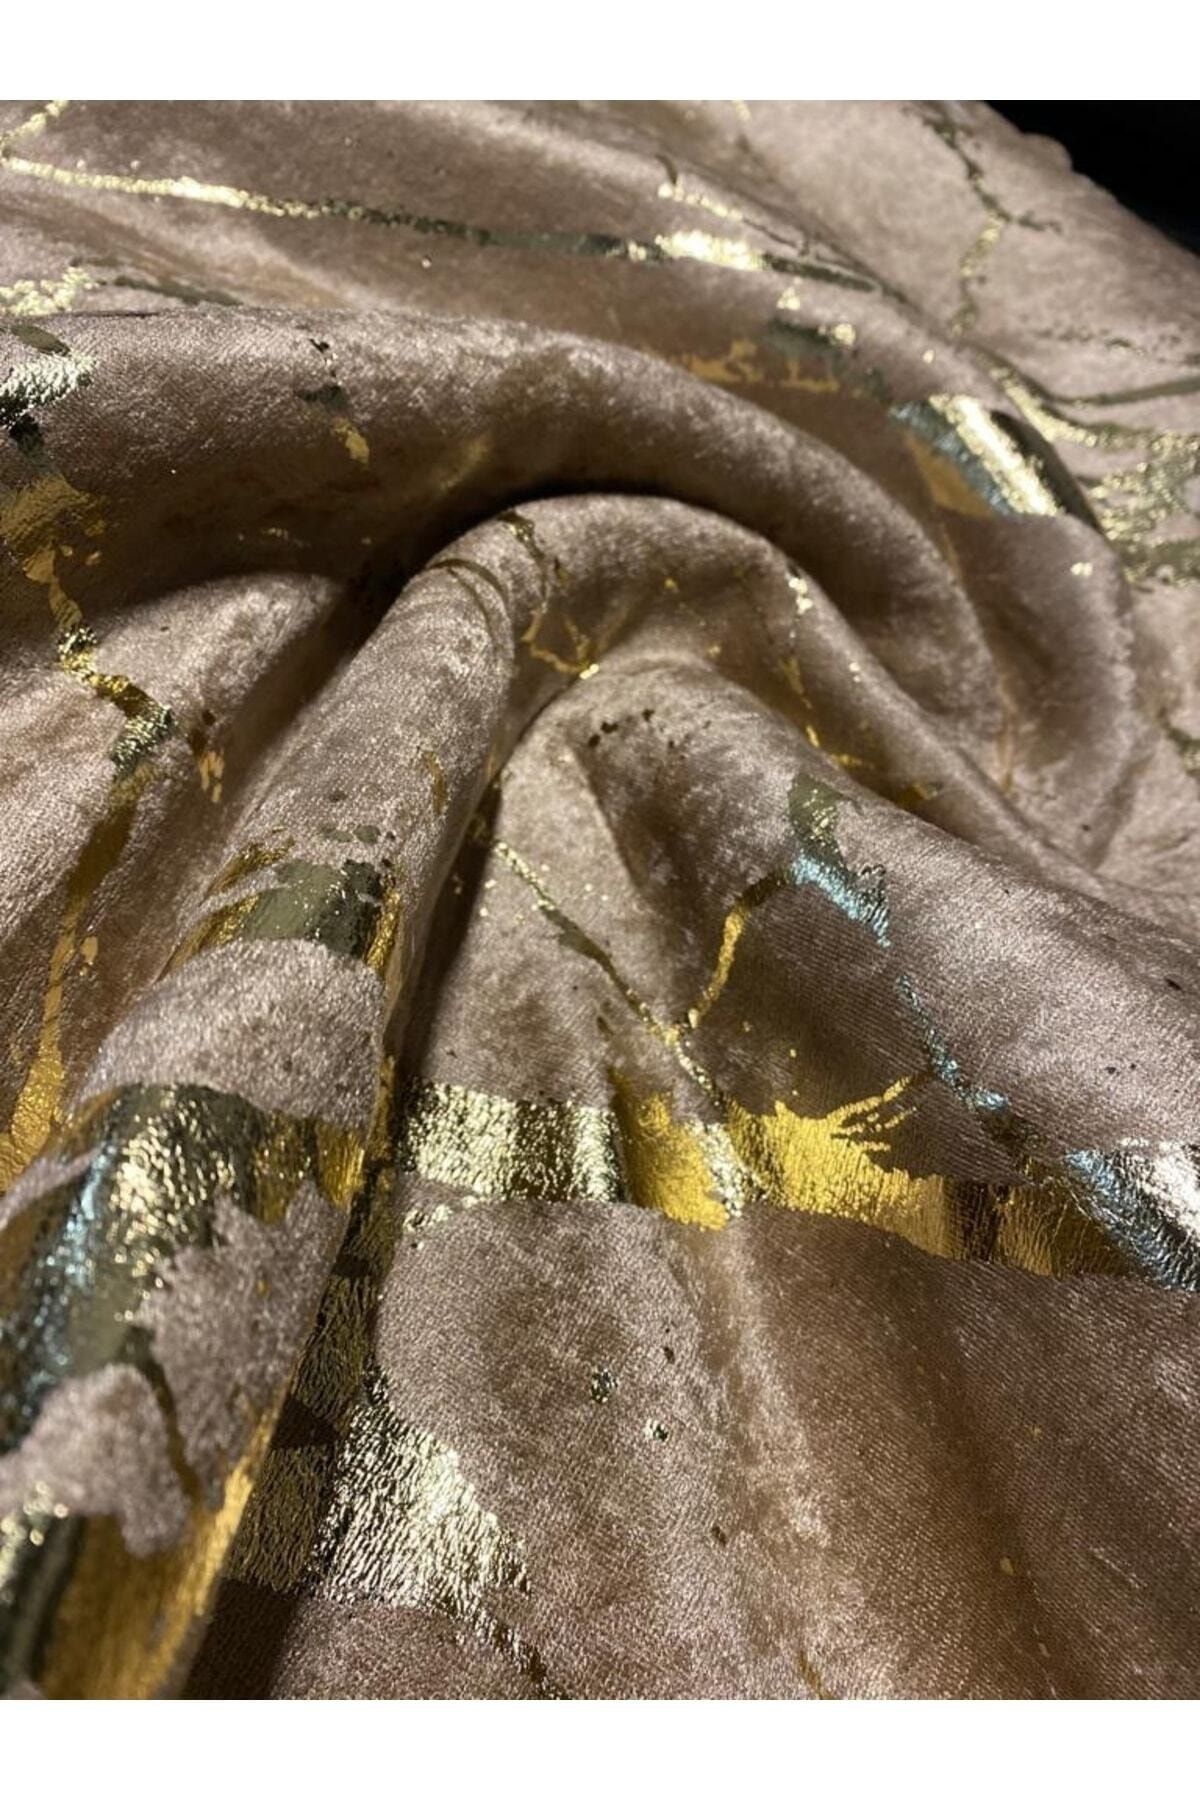 Tekstilsa Koltuk Çekyat Örtüsü Yeni Moda Altın Varaklı Dekoratif Sütlükahve Zemin Süngerli Koltuk Örtüsü 1adet